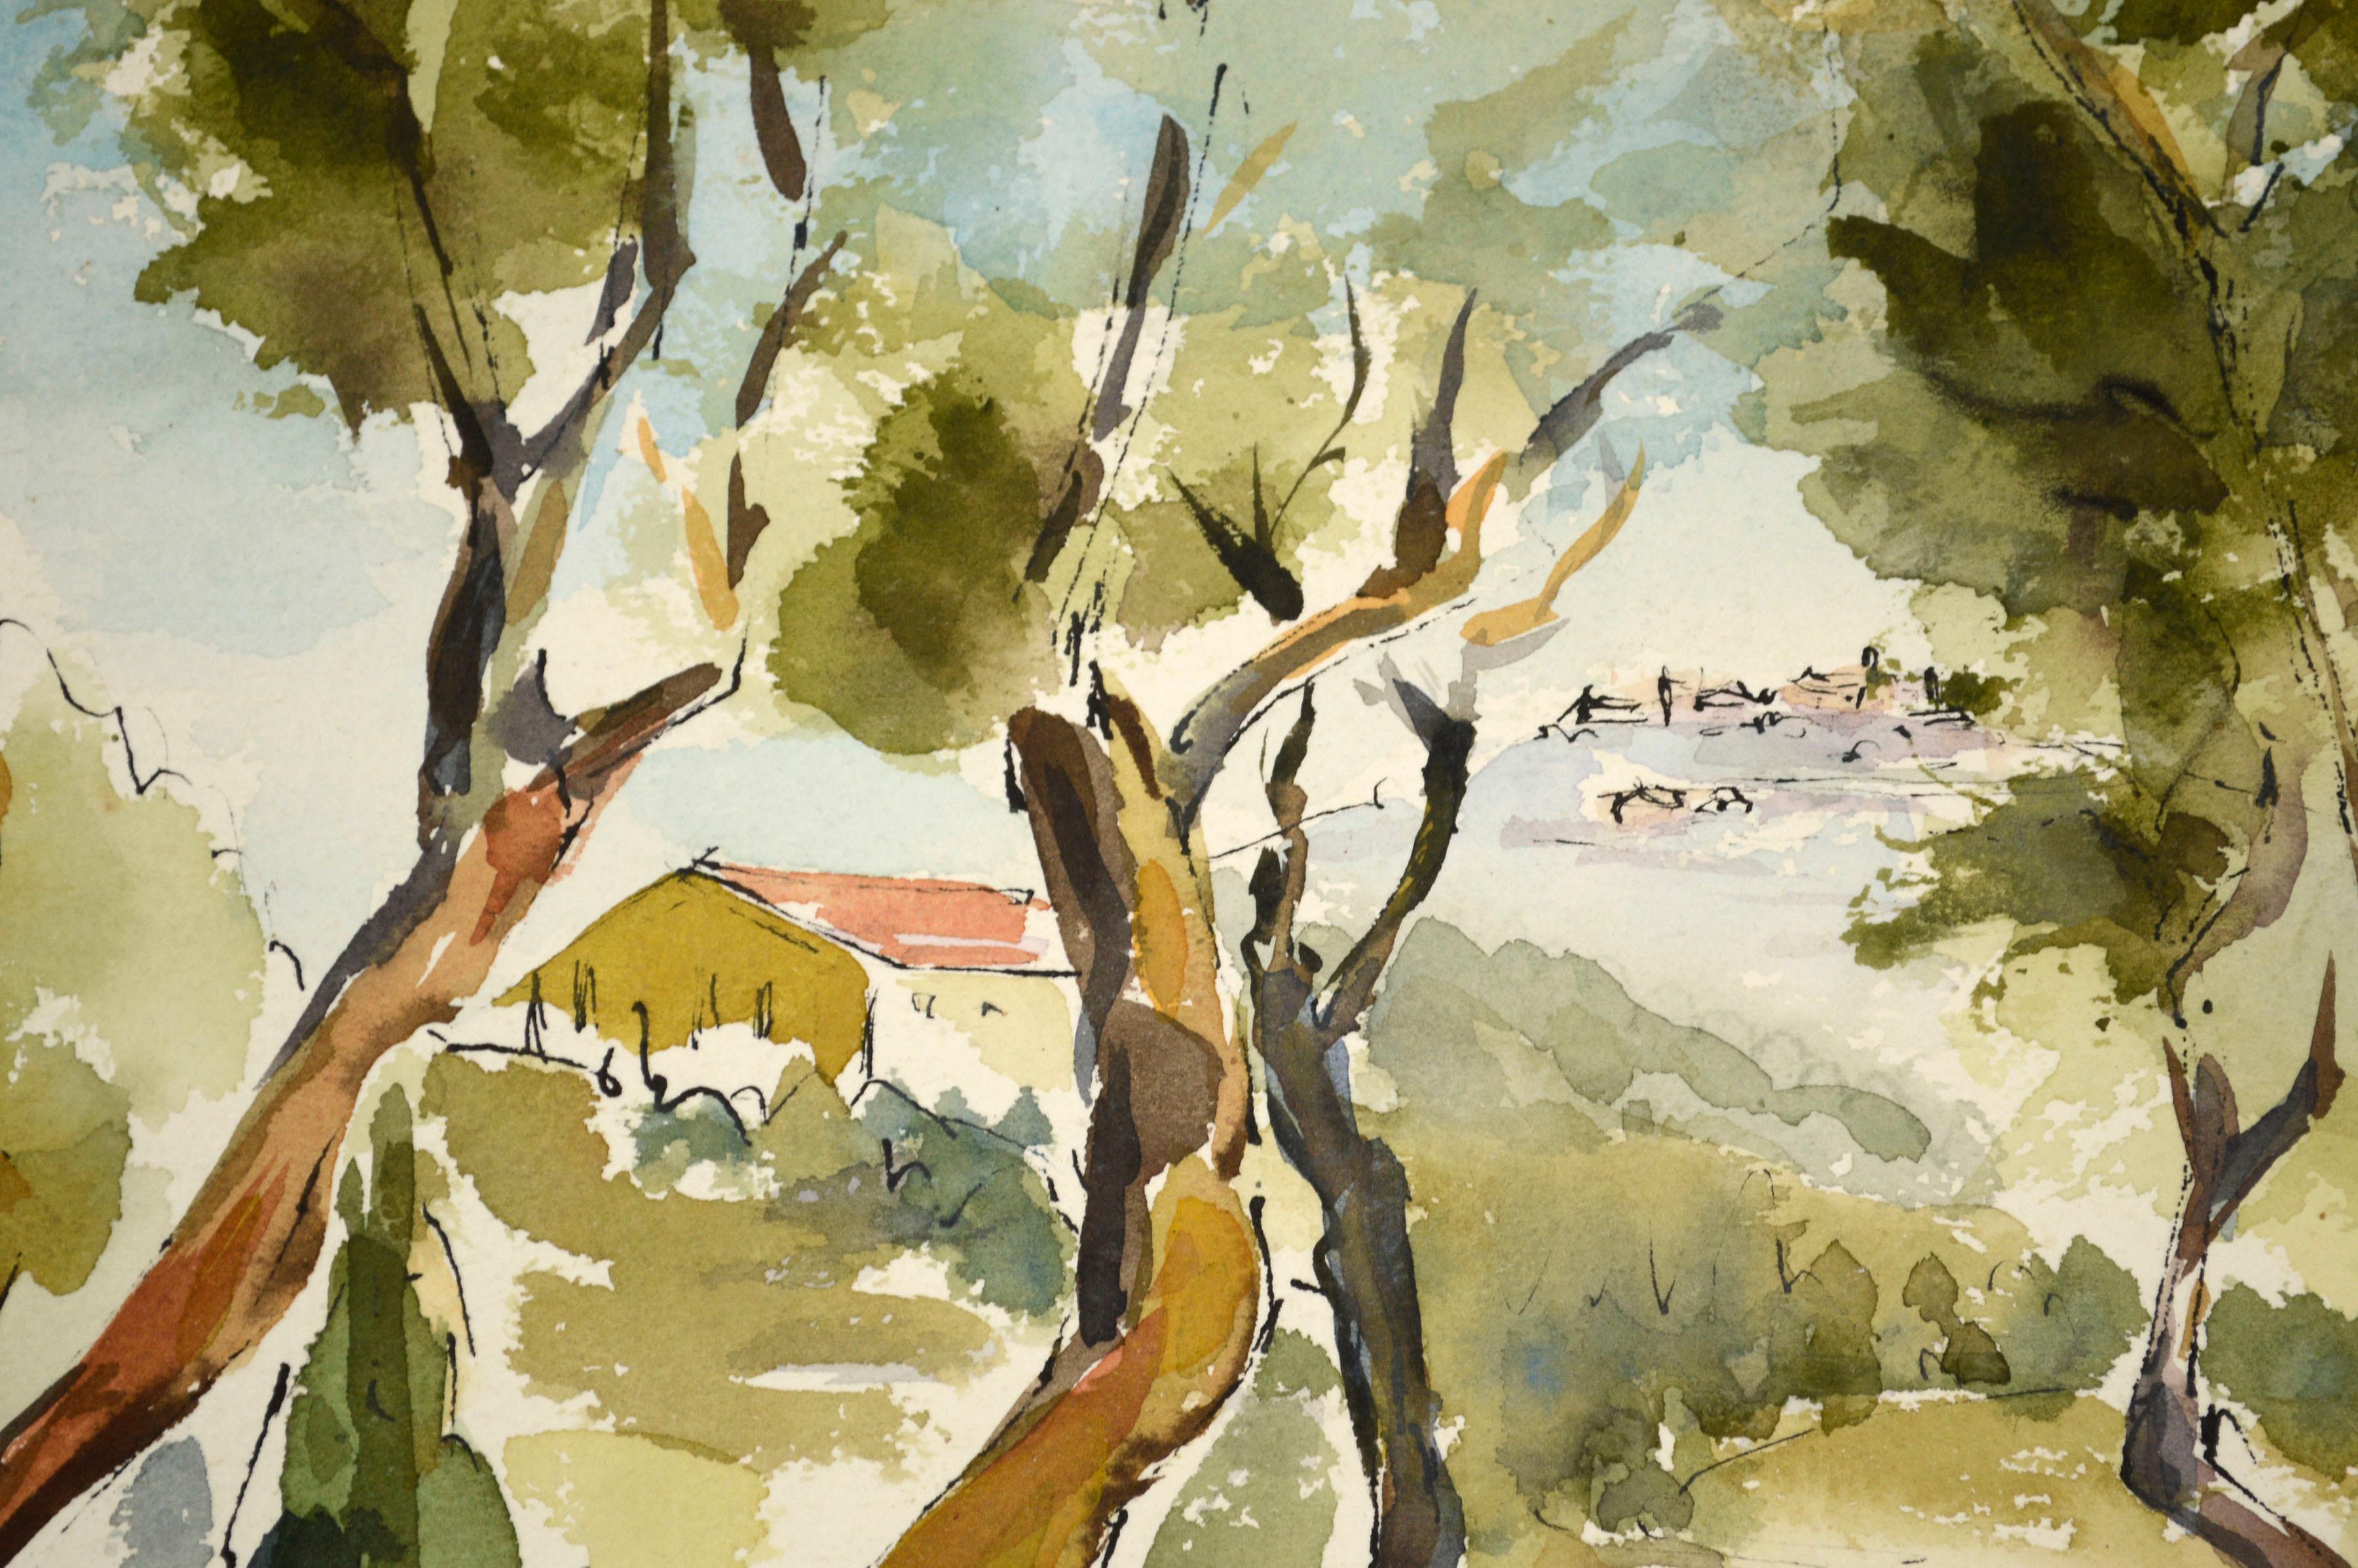 Ein lebhaftes modernistisches Landschaftsaquarell der kalifornischen Künstlerin Nevalda Bartolini Liberi (Italienerin/Amerikanerin, 20. Jahrhundert) aus Laguna Beach. Dieses schöne und helle Aquarell zeigt einen Blick auf einen schönen Hügel, der